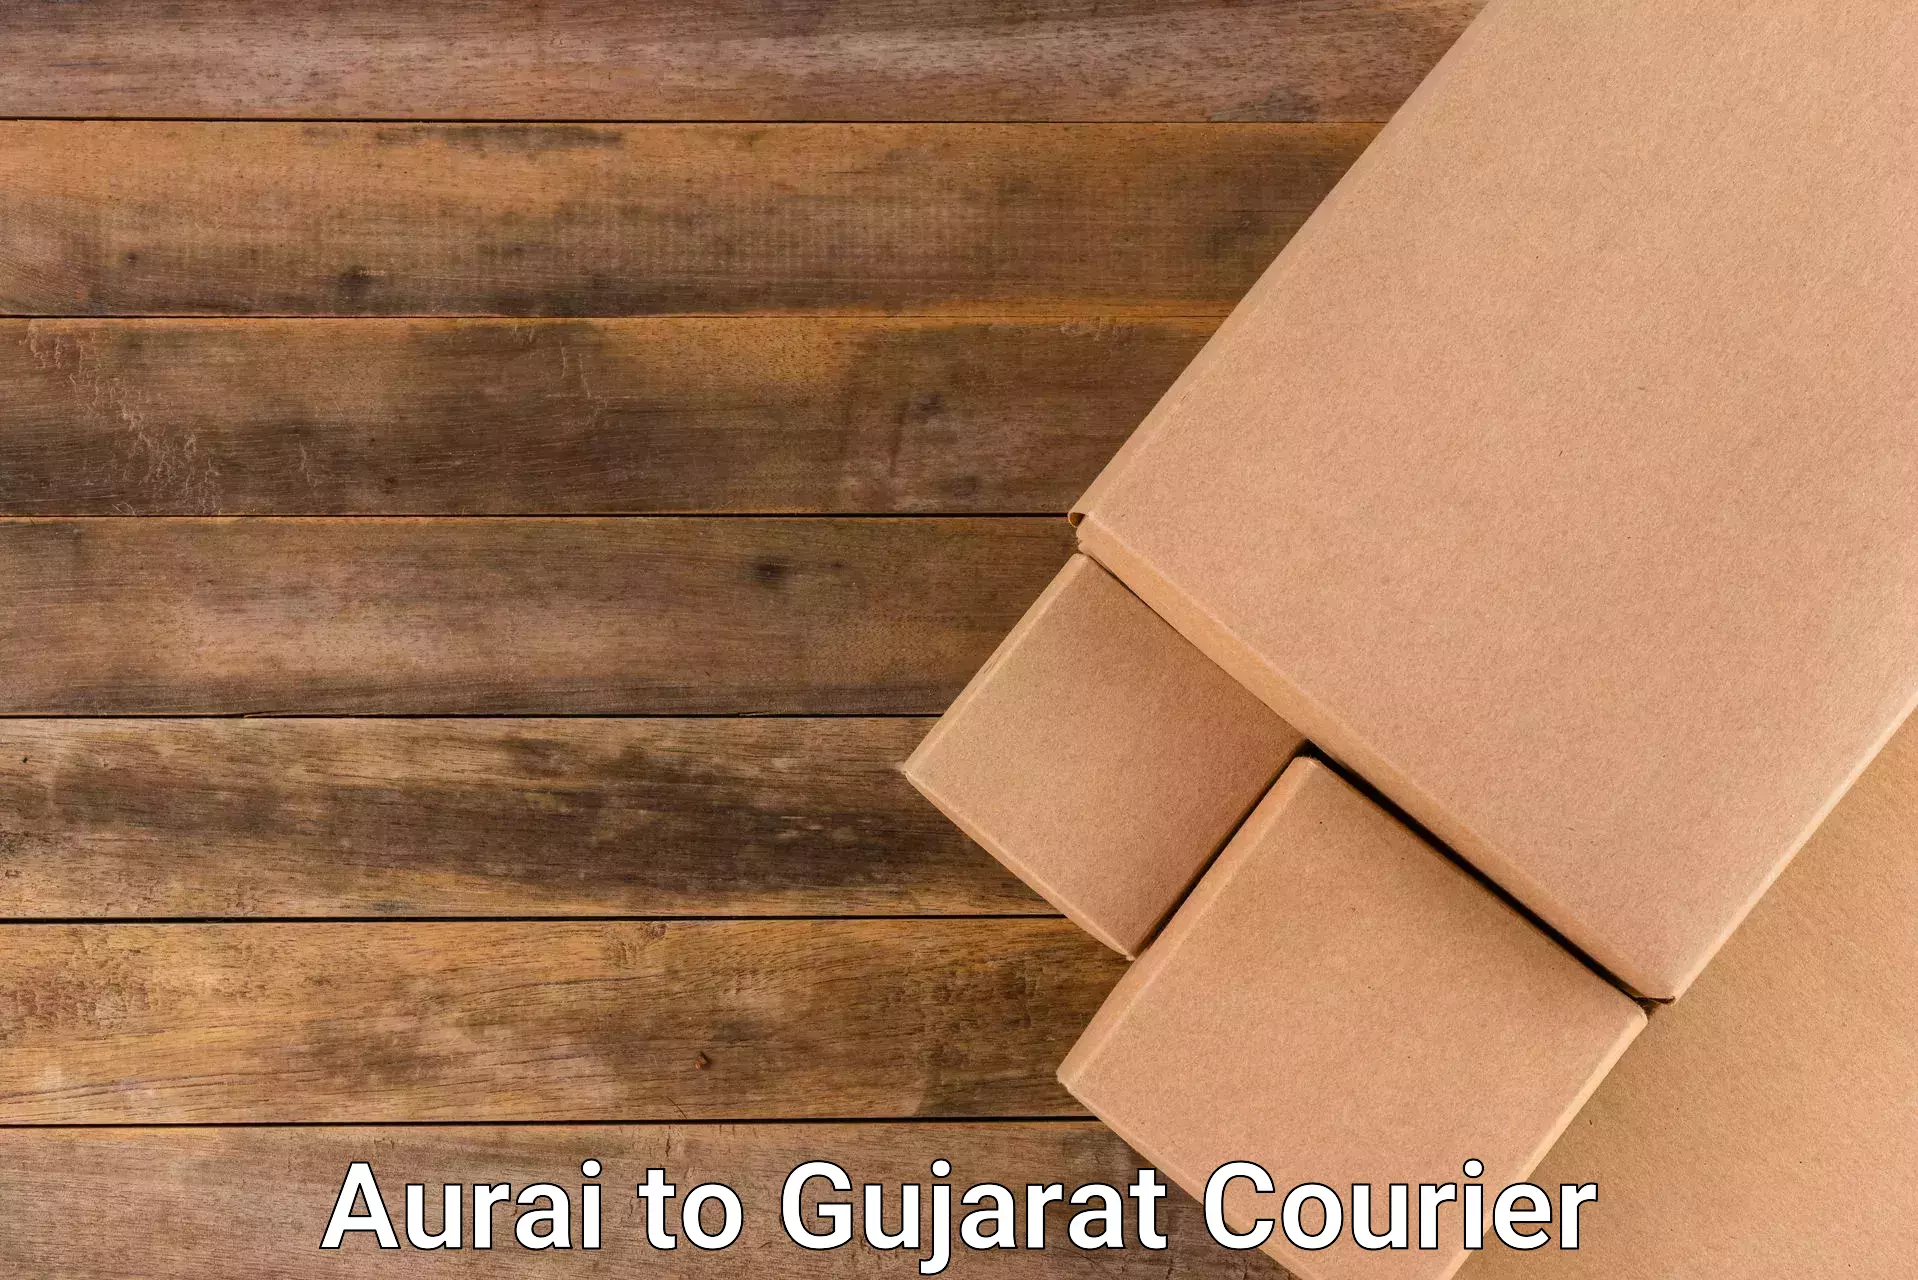 Courier service comparison Aurai to Bhatiya